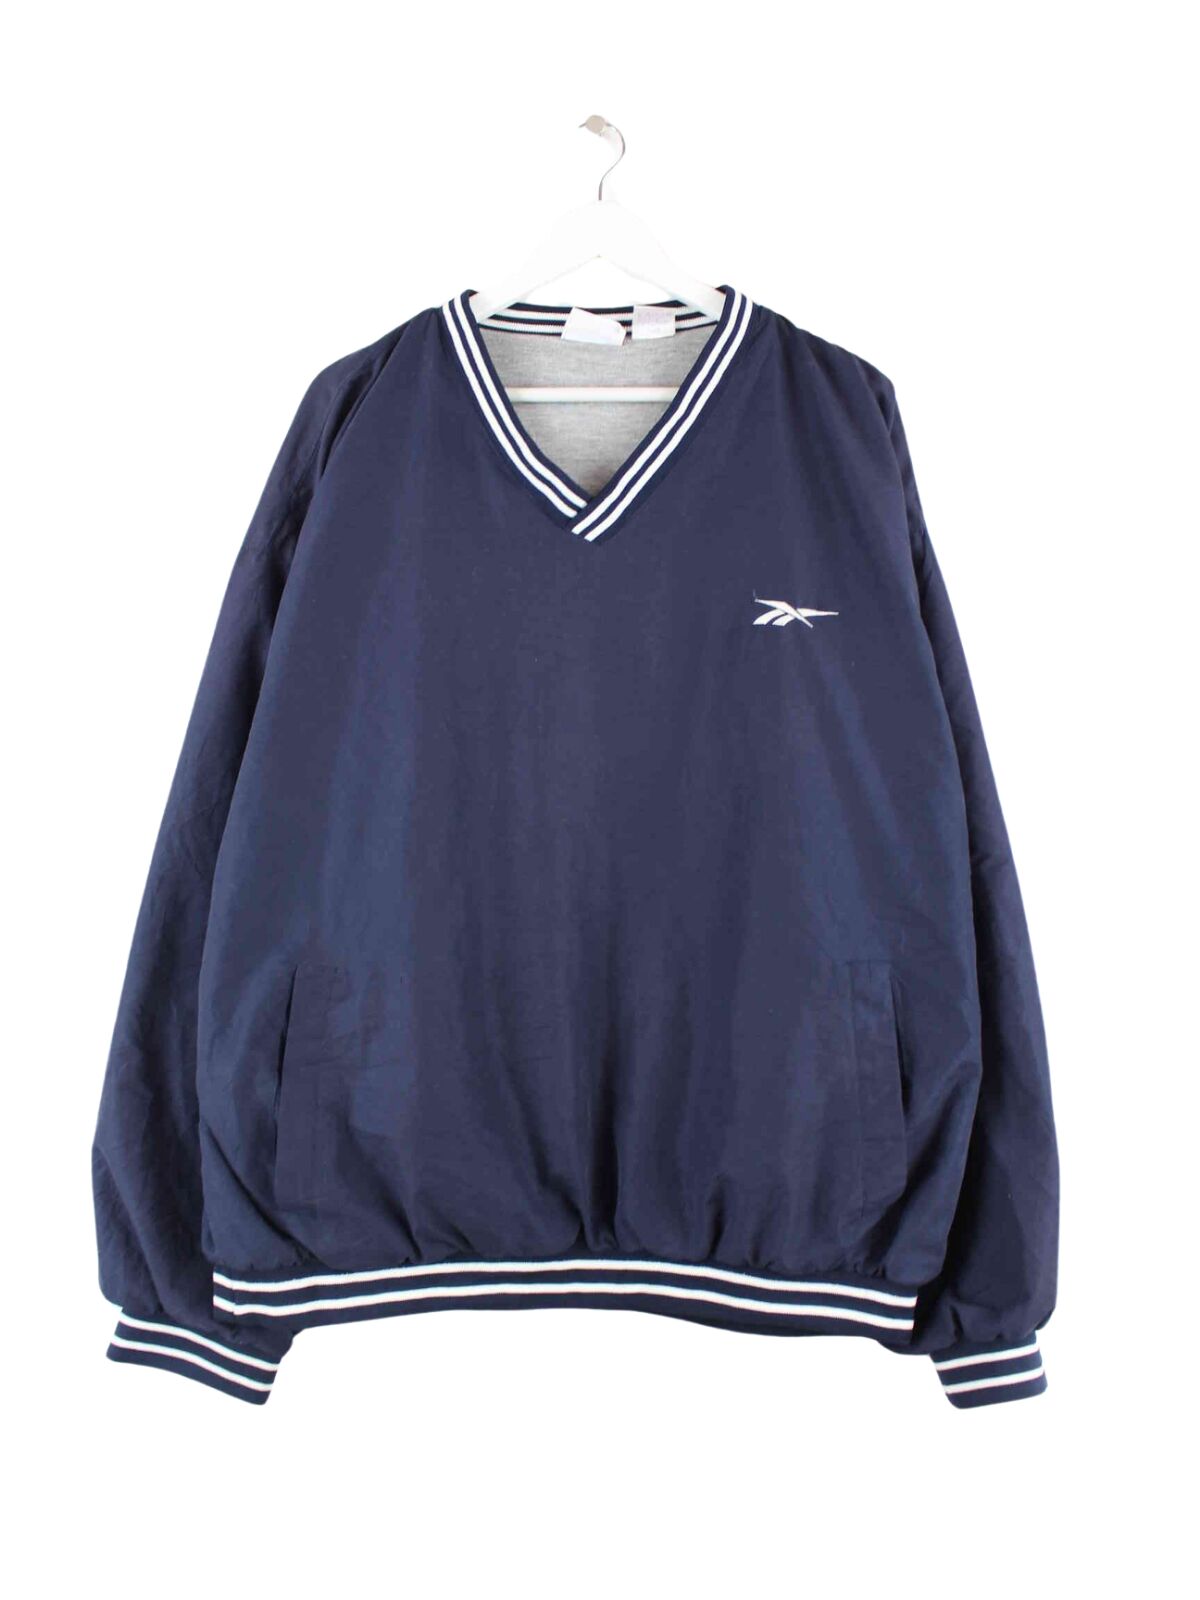 Reebok 90s Vintage V-Neck Track Top Sweater Blau XL (front image)